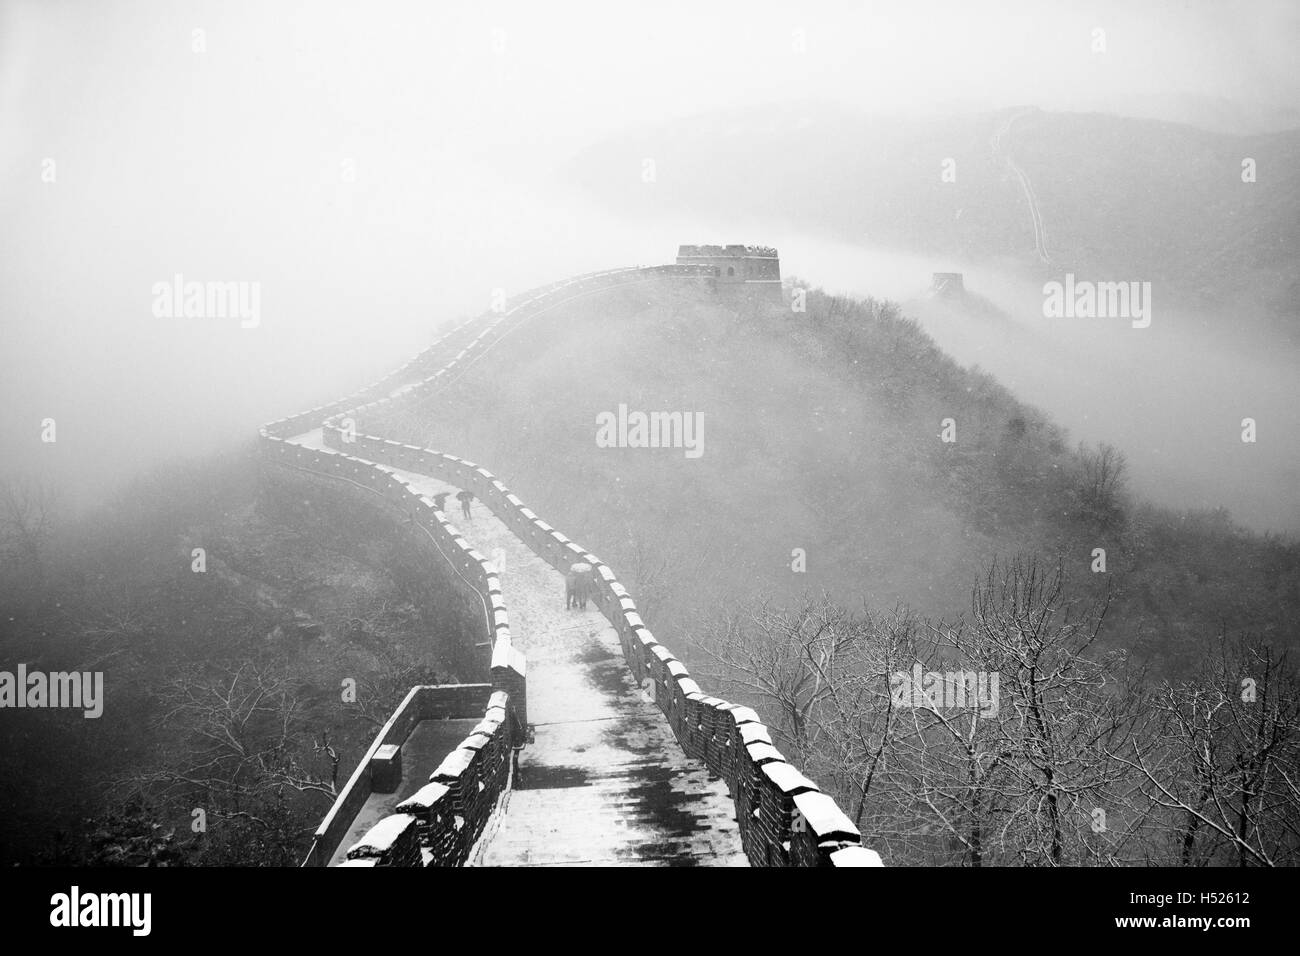 Une partie de la section de Mutianyu de la Grande muraille de Chine sous la neige en hiver à Mutianyu près de Beijing Chine Banque D'Images